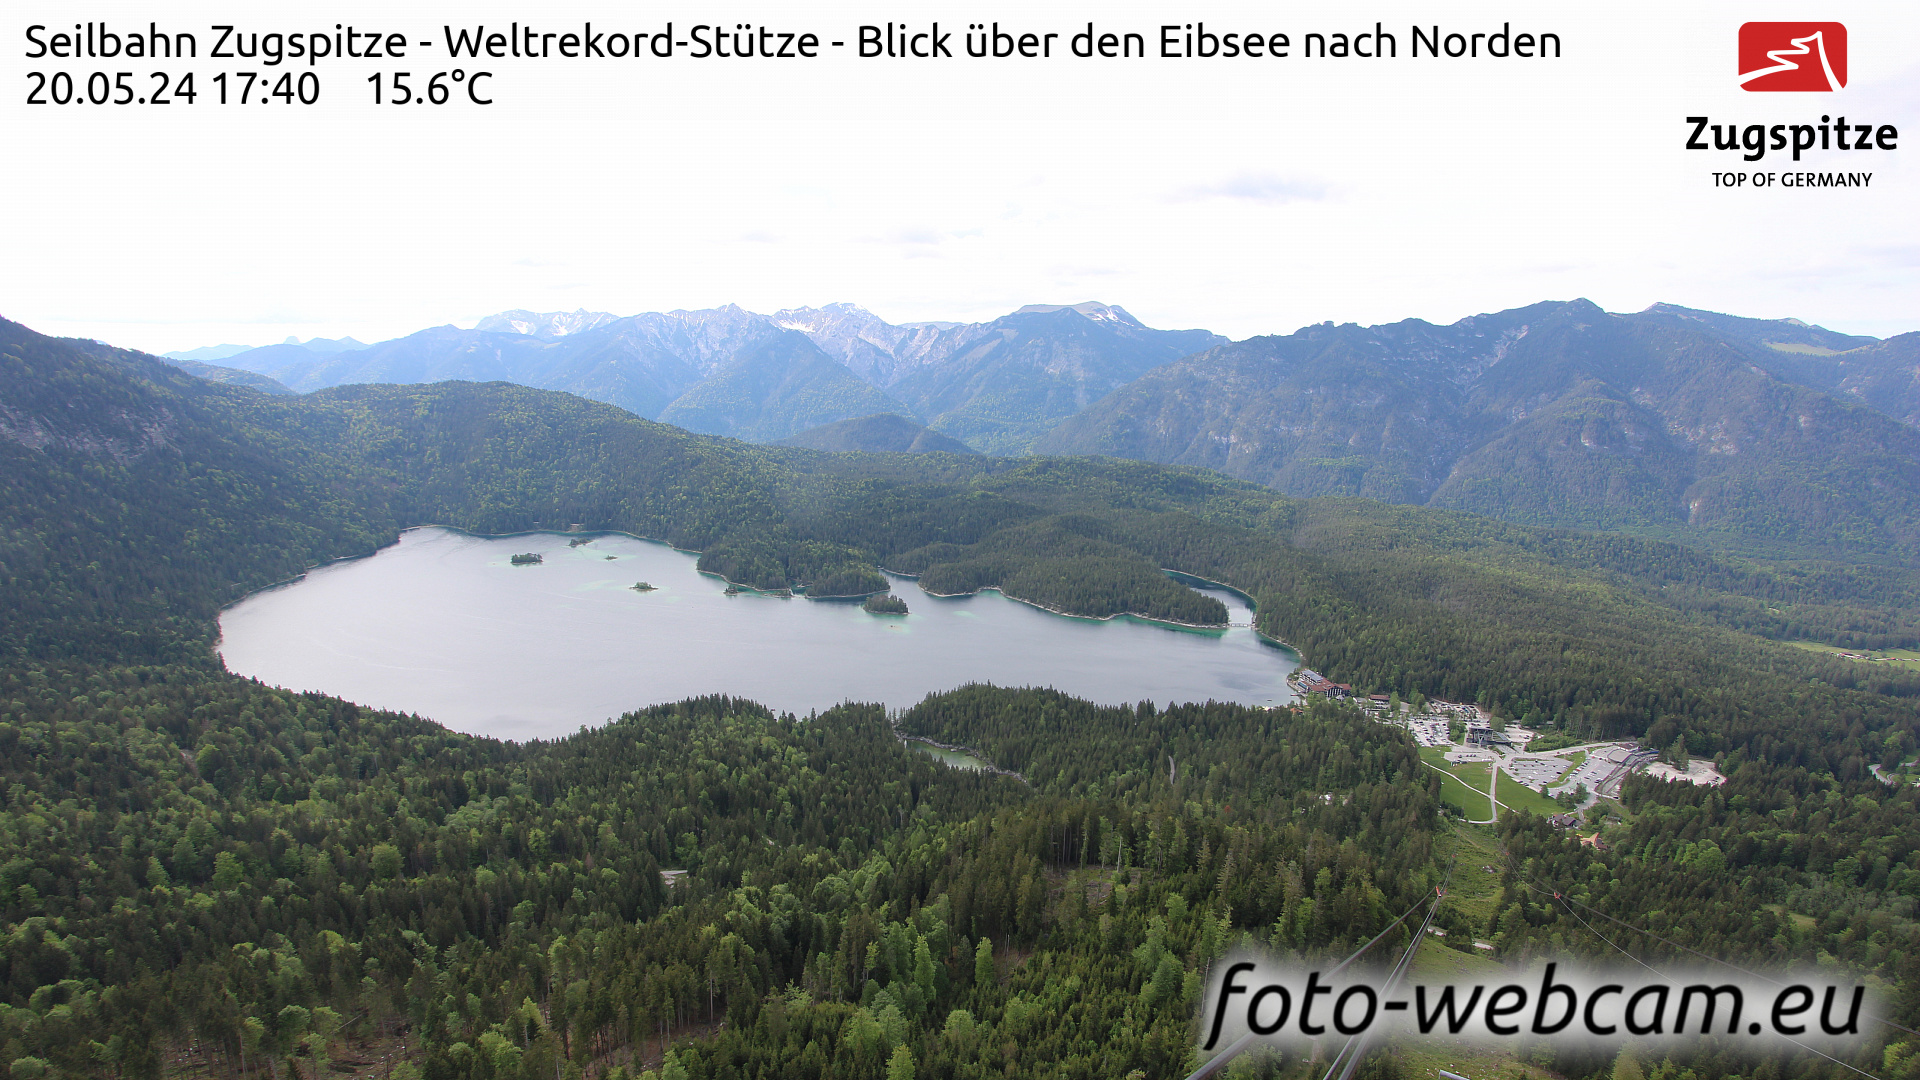 Zugspitze Wed. 17:49